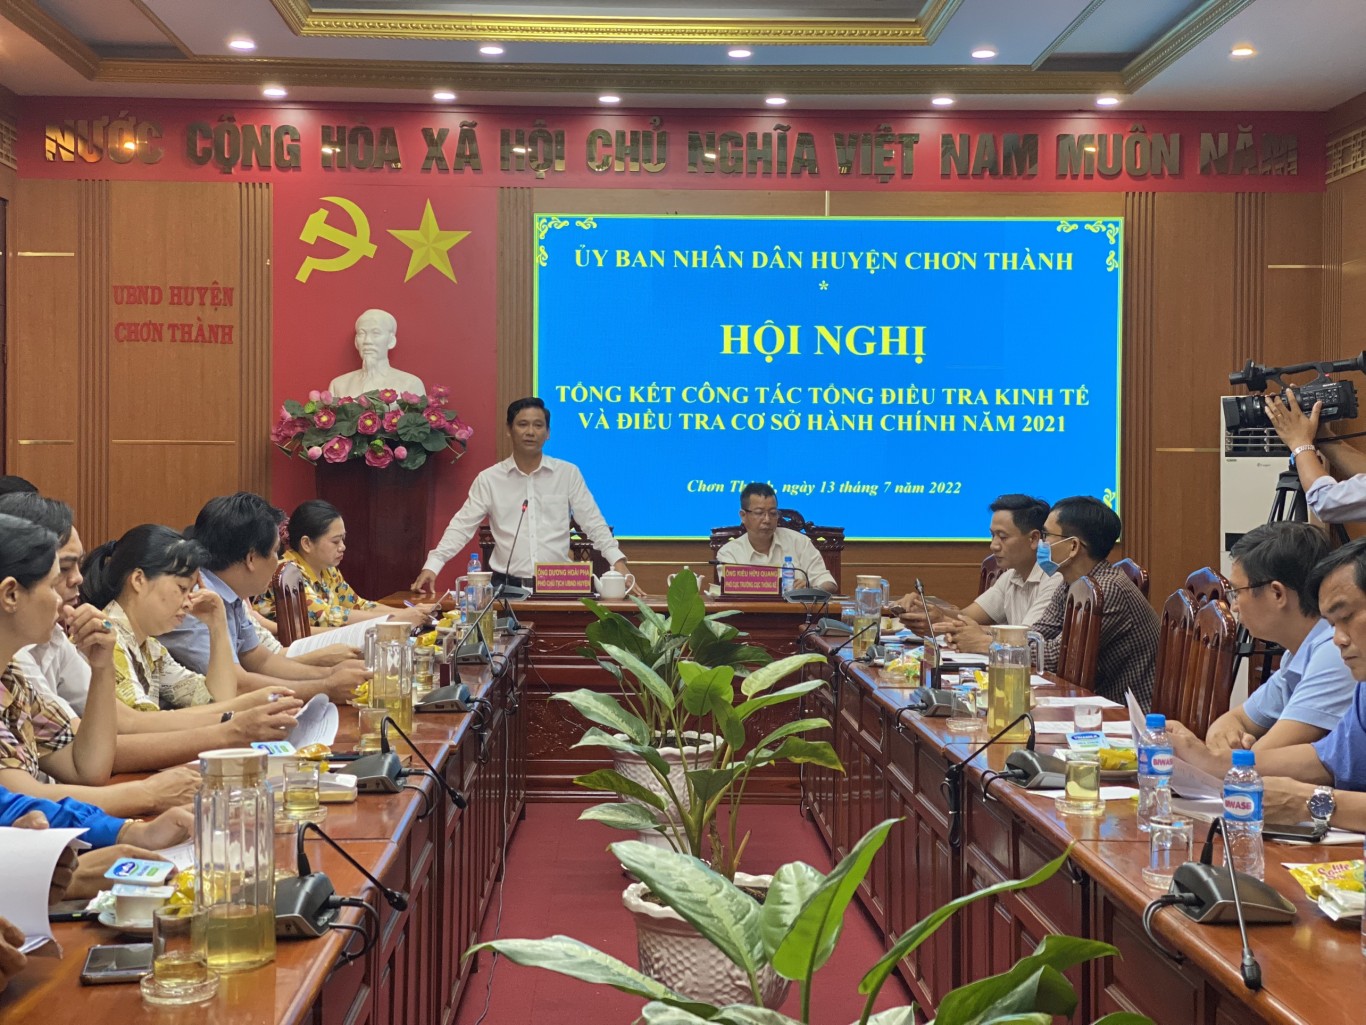 Ông Dương Hoài Pha - Phó Chủ tịch UBND huyện, Trưởng Ban Chỉ đạo Tổng điều tra kinh tế và điều tra cơ sở hành chính huyện chủ trì hội nghị